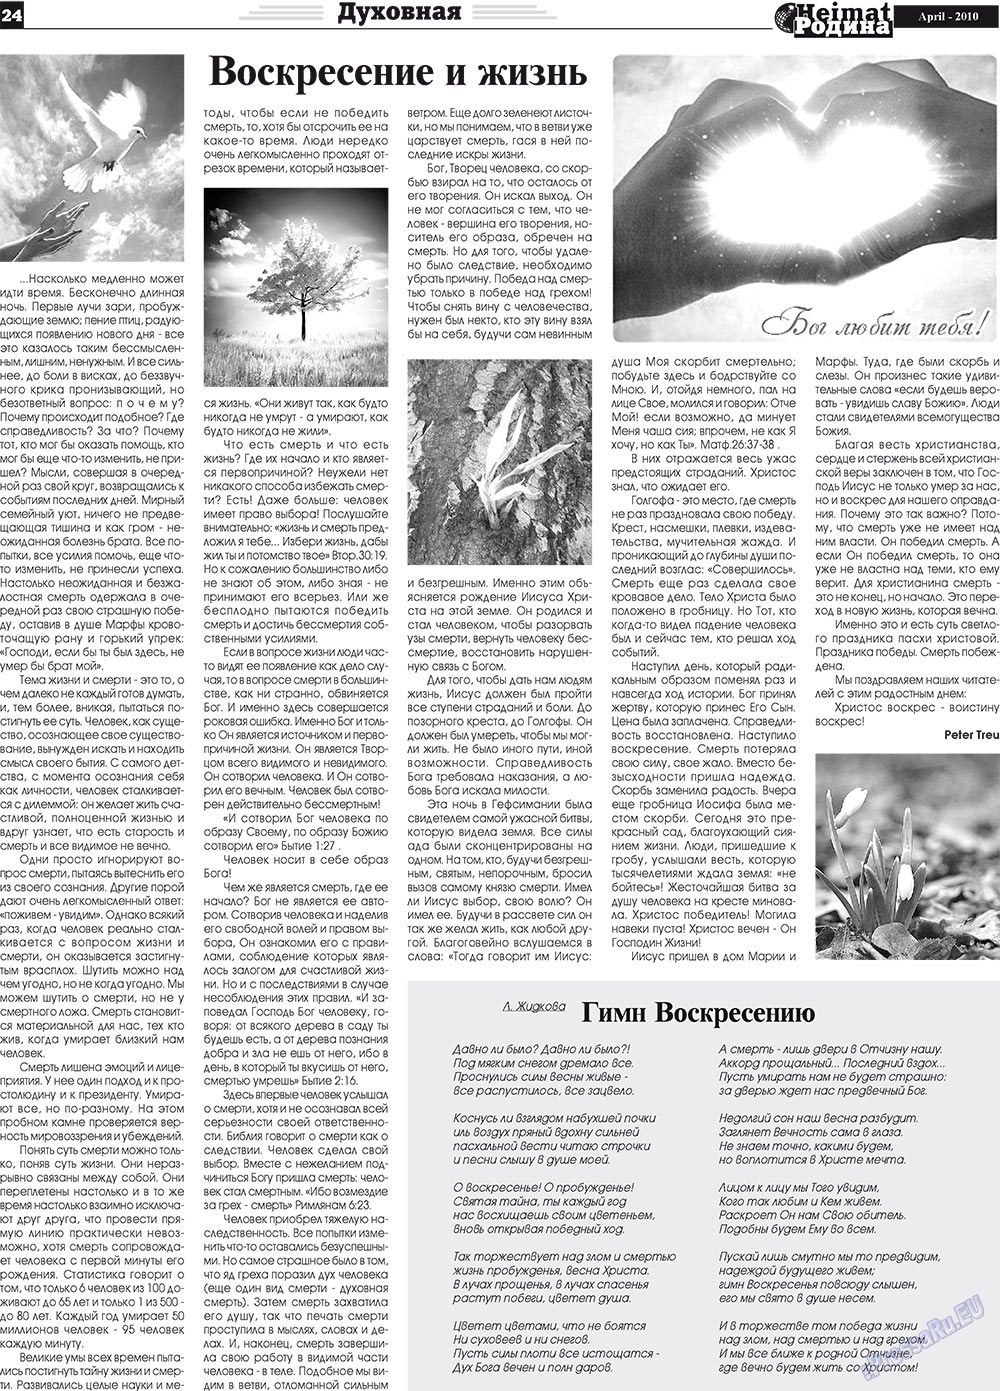 Heimat-Родина (газета). 2010 год, номер 4, стр. 24